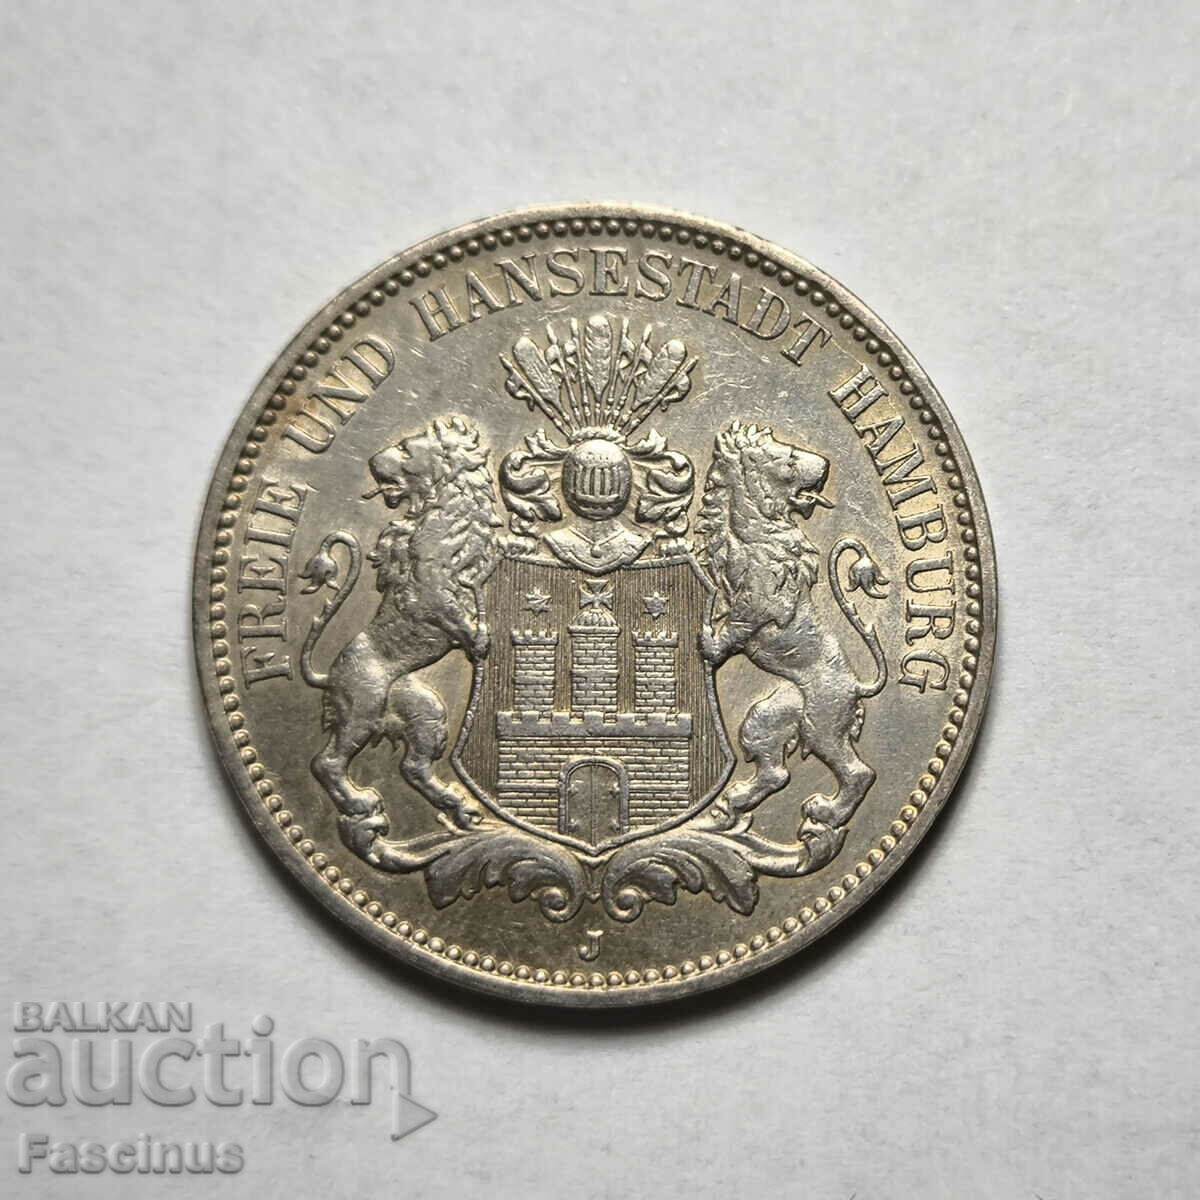 Сребърна монета 3 марки 1909 Хамбург Германия